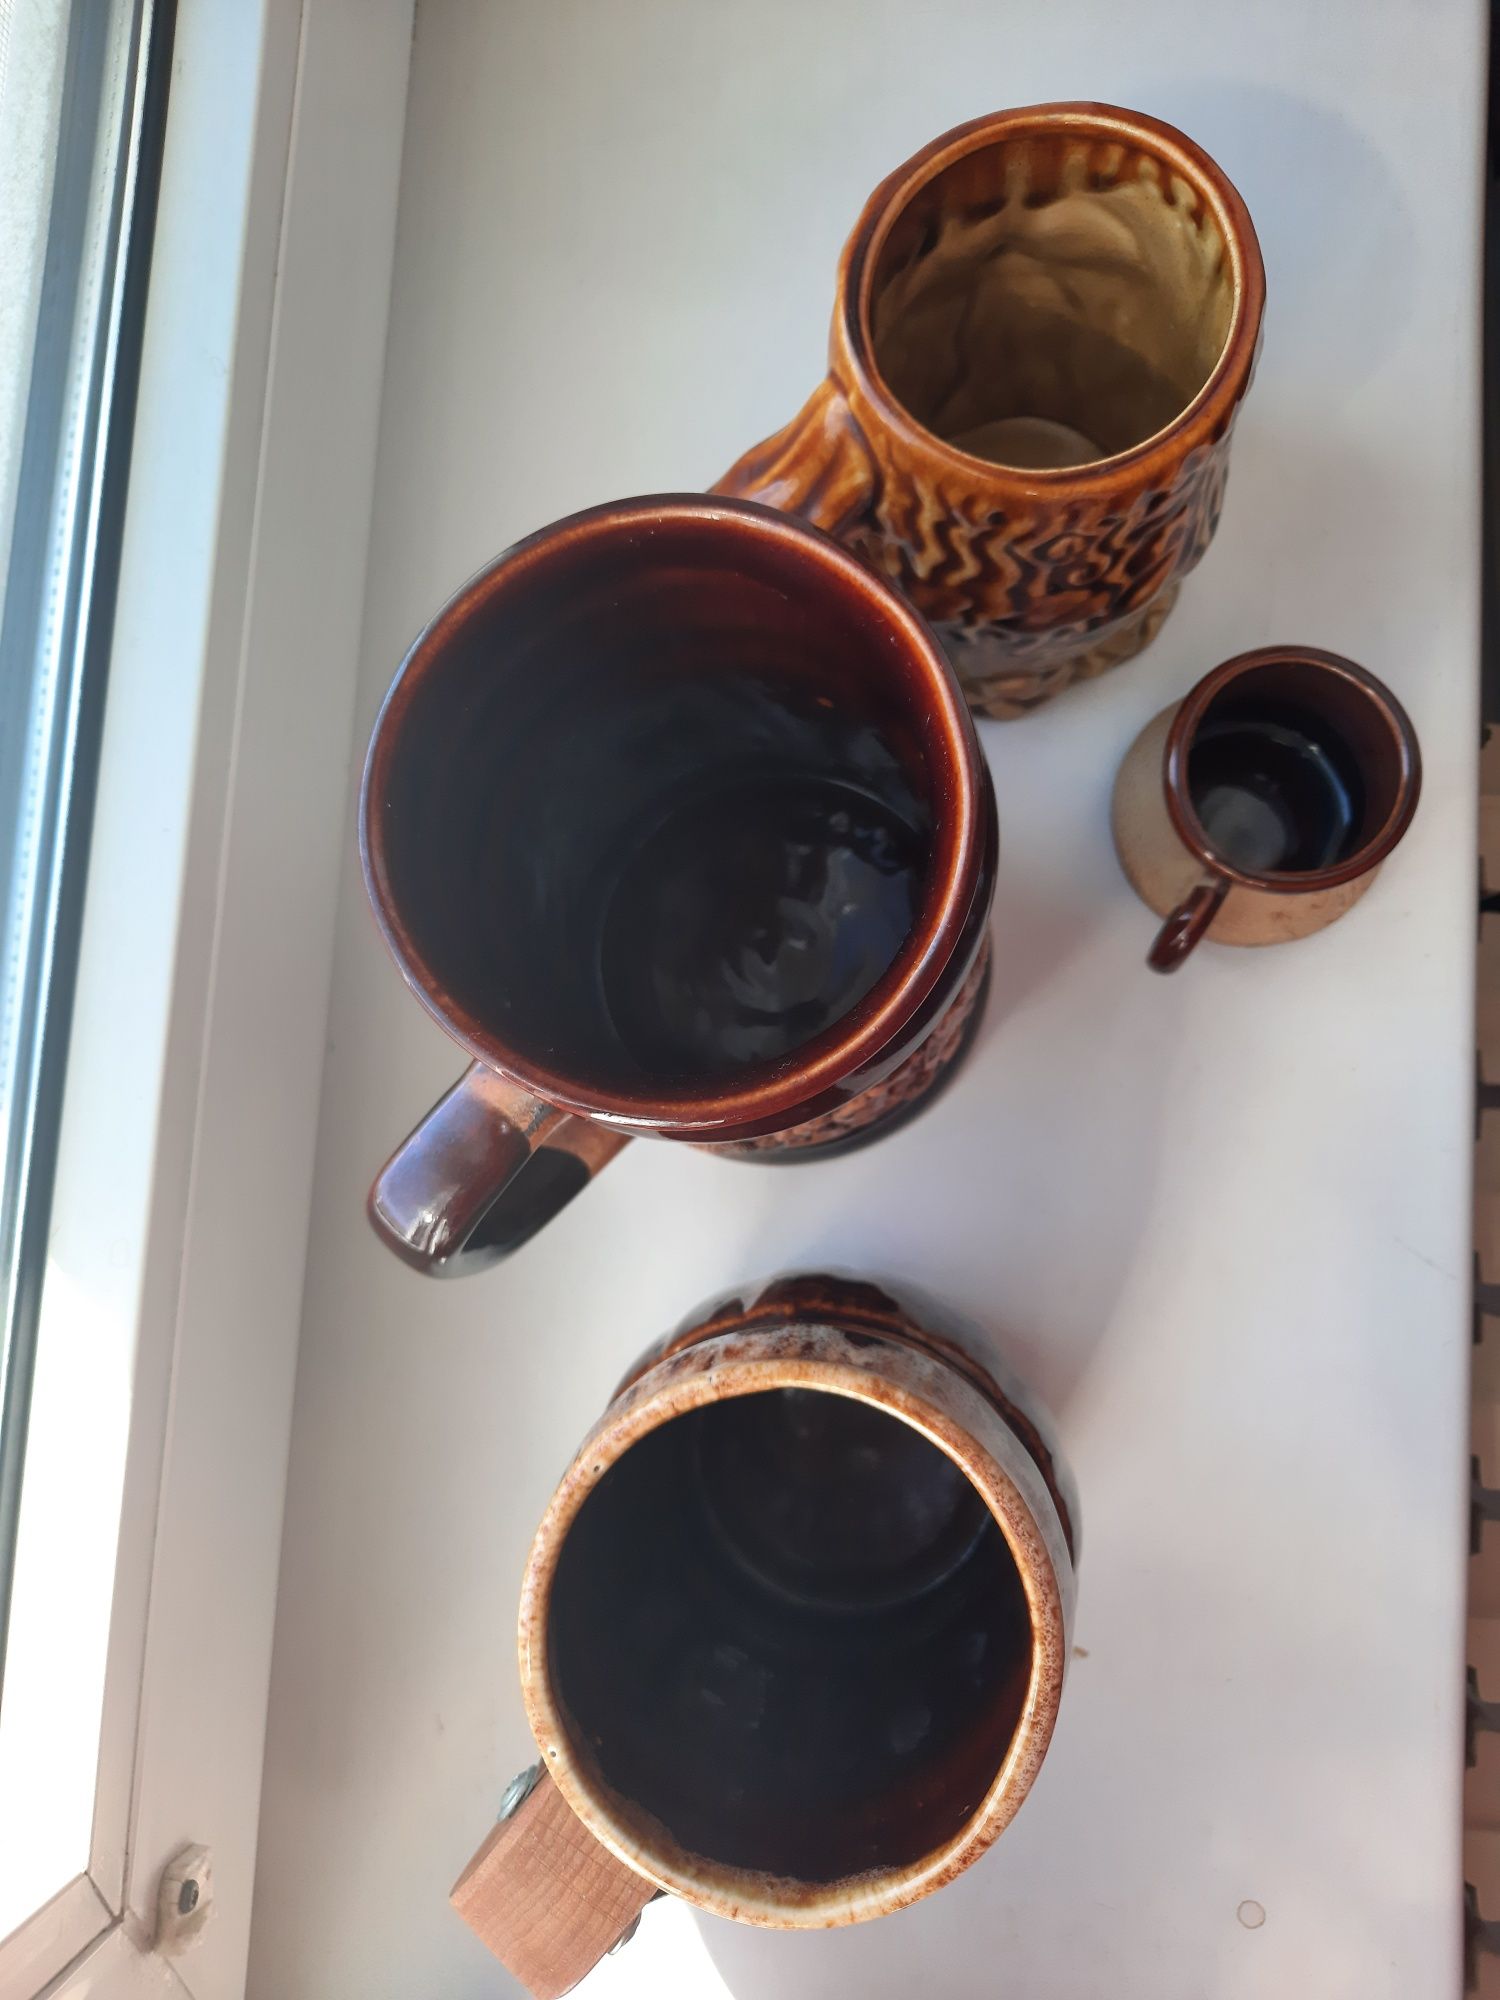 Кухоль пивний керамічний подарунок чоловікові горнятко для кави керам